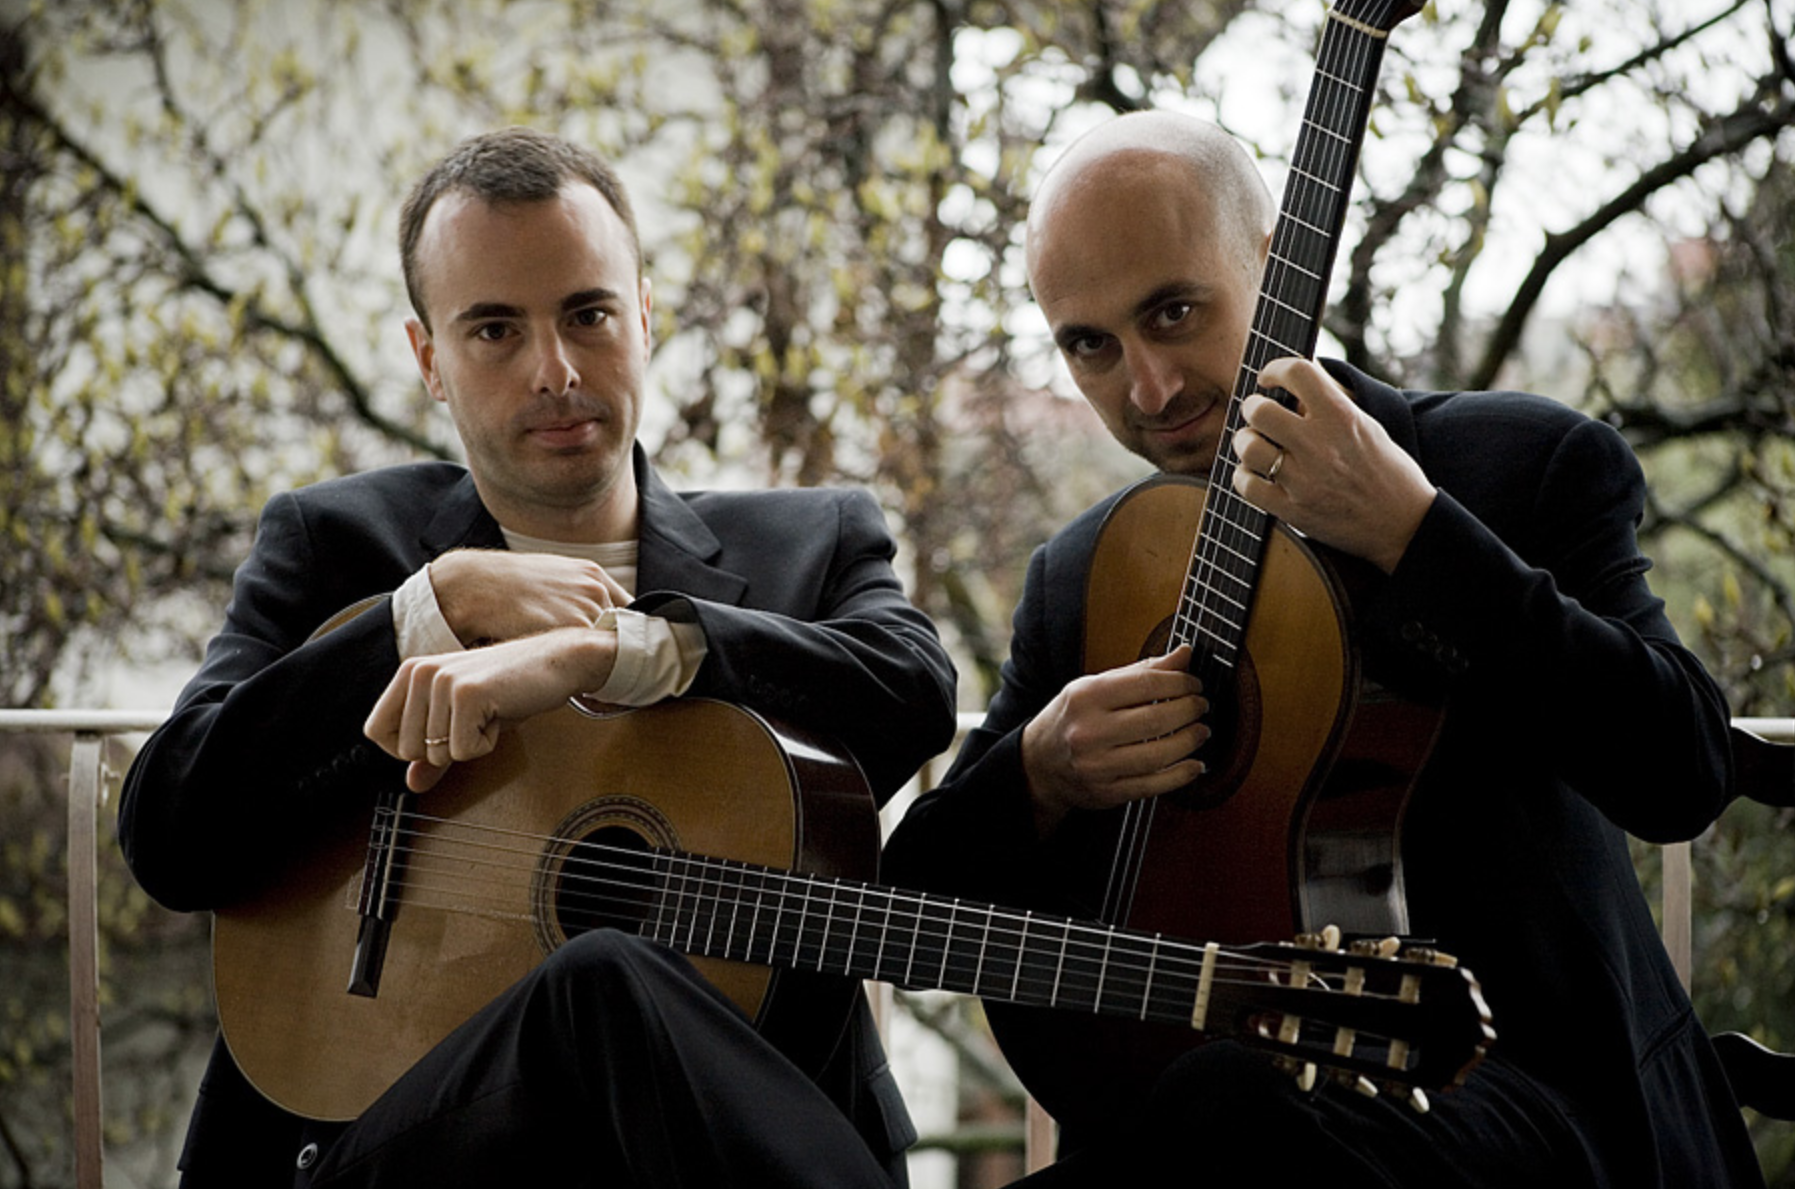 Estreno de temporada con dúo de virtuosos guitarristas italianos